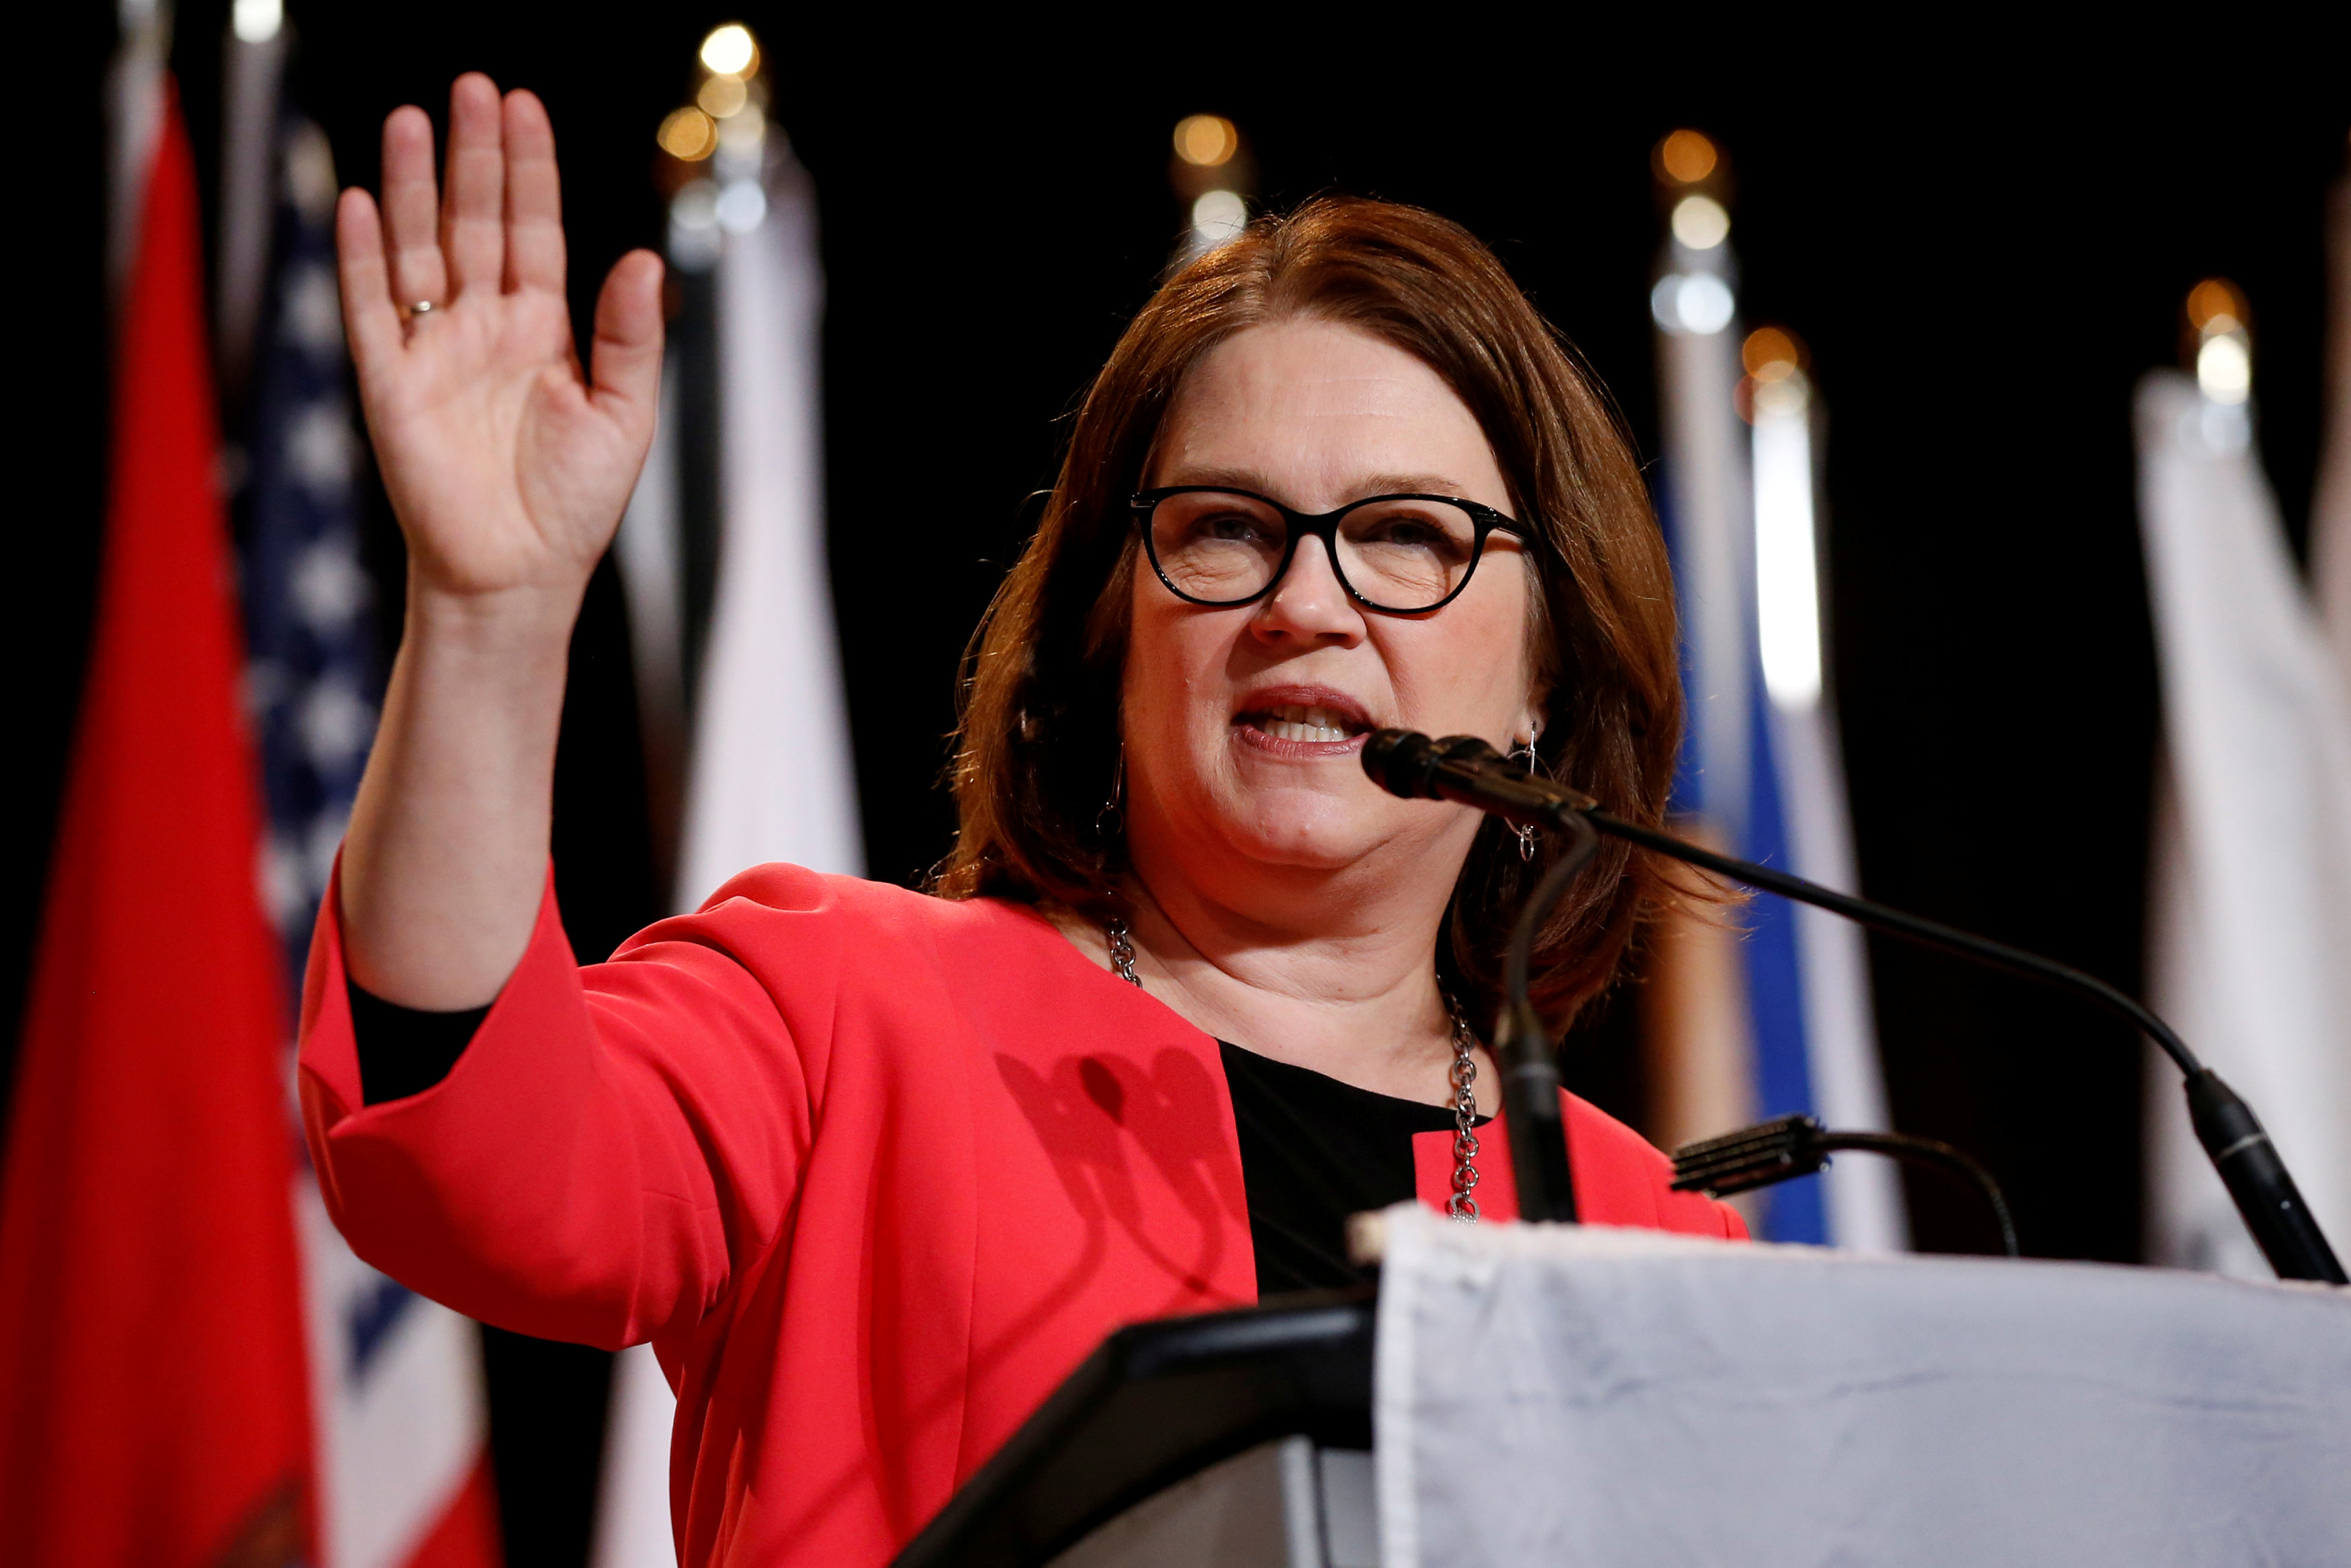 Foto: La ministra canadiense, Jane Philpott, habla durante la Asamblea de Primeras Naciones y Asamblea de Jefes Especiales en Gatineau, Quebec, el 2 de mayo de 2018